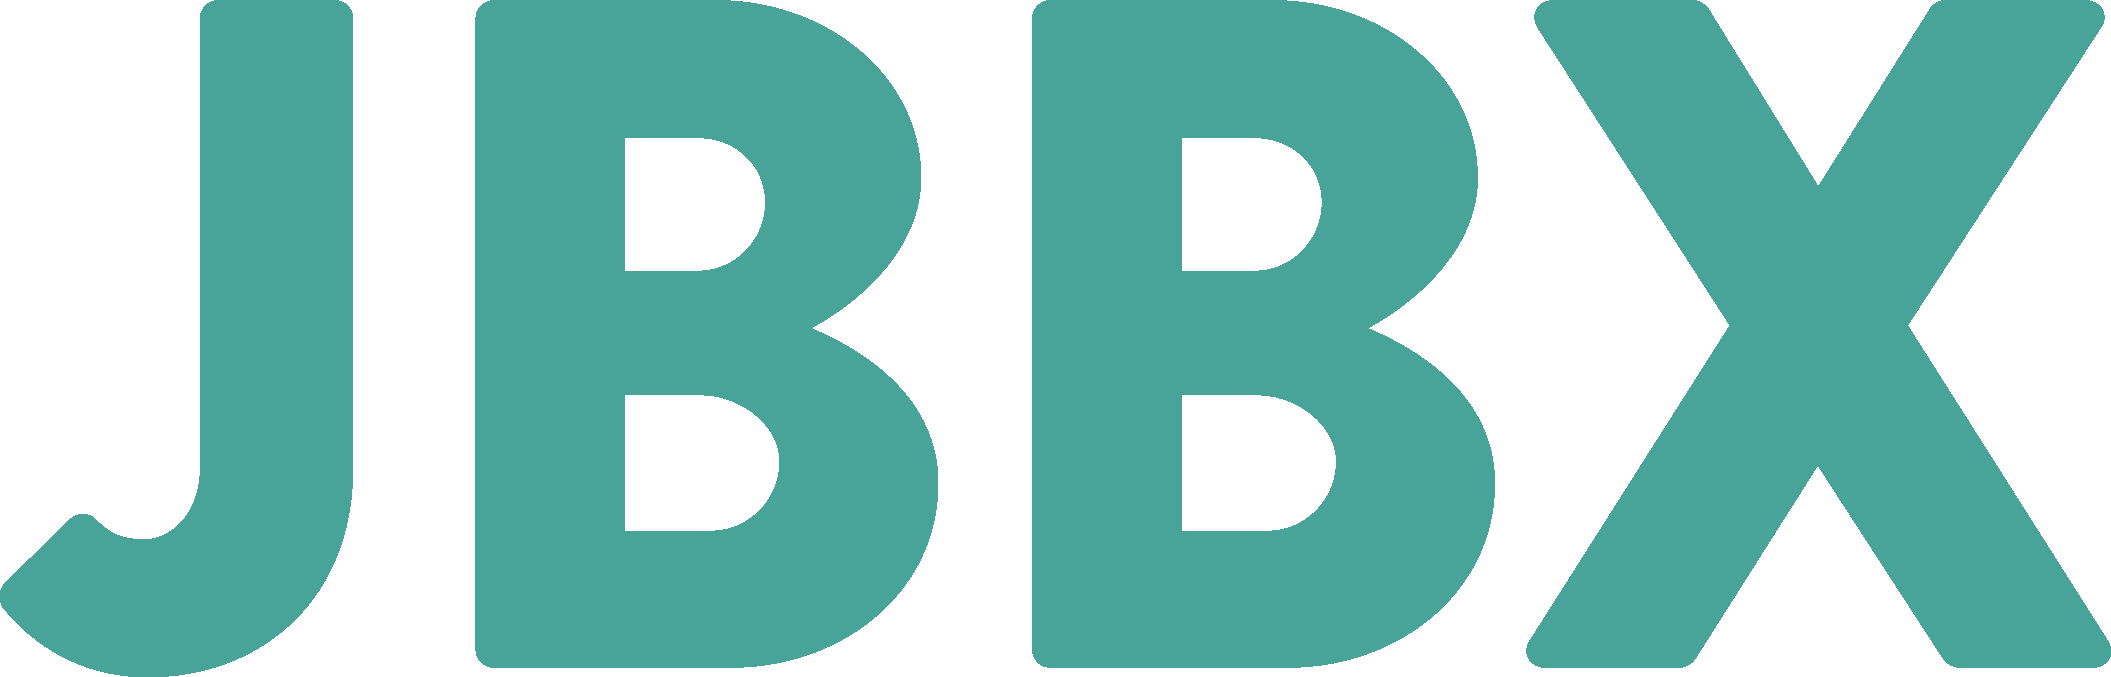 jbbx-logo-groen